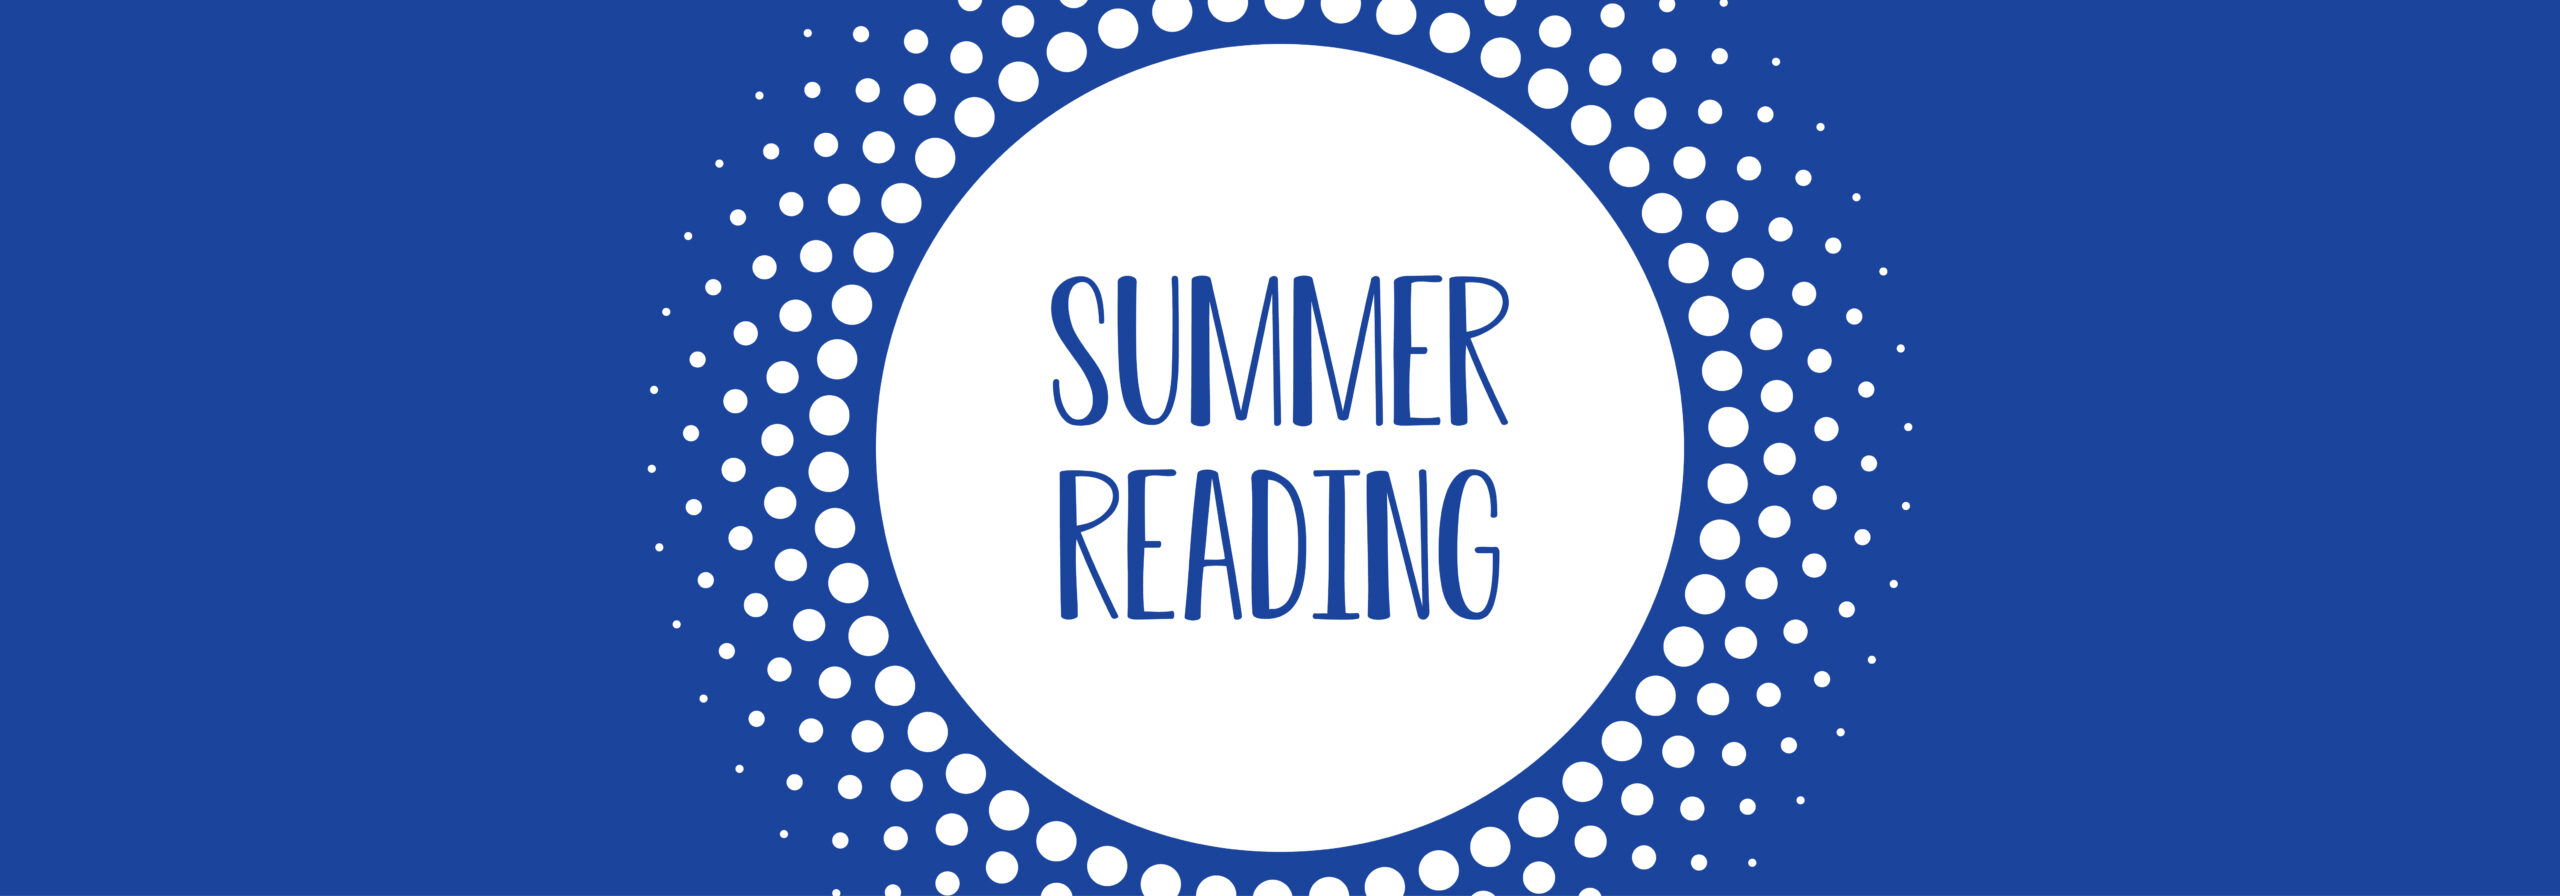 Summer Reading Website header